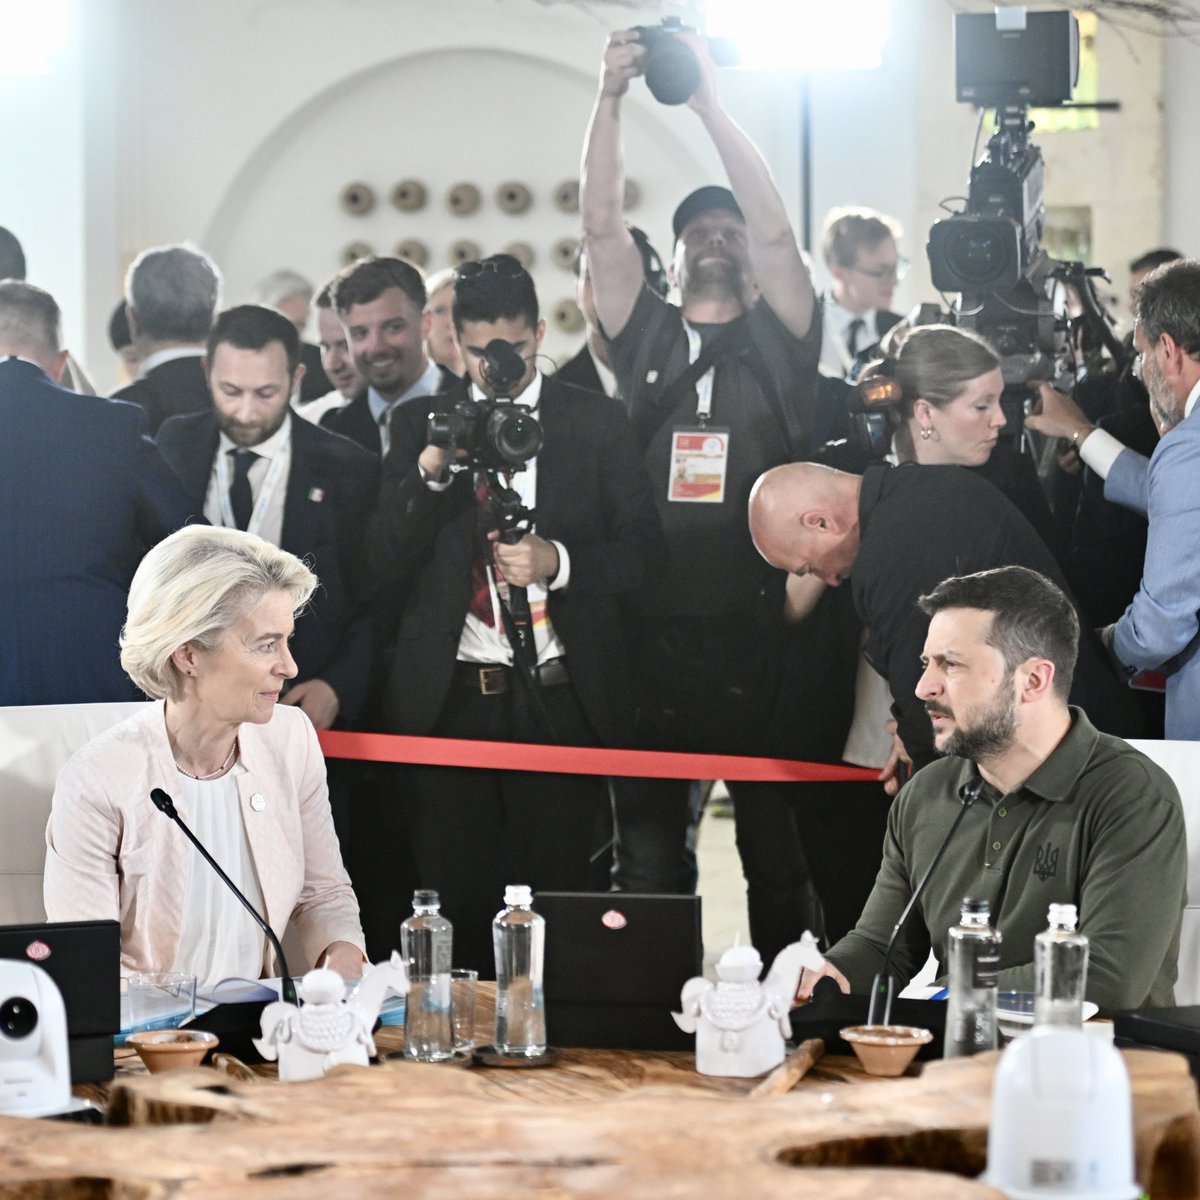 Урсула фон дер Ляєн: G7 погодилася надати Україні кредити на суму близько $50 млрд до кінця року. Ми використаємо надприбутки від суверенних активів Росії, щоб їх погасити. Це базується на діях ЄС, де ми вже спрямовуємо ці надприбутки на оборону та відновлення України